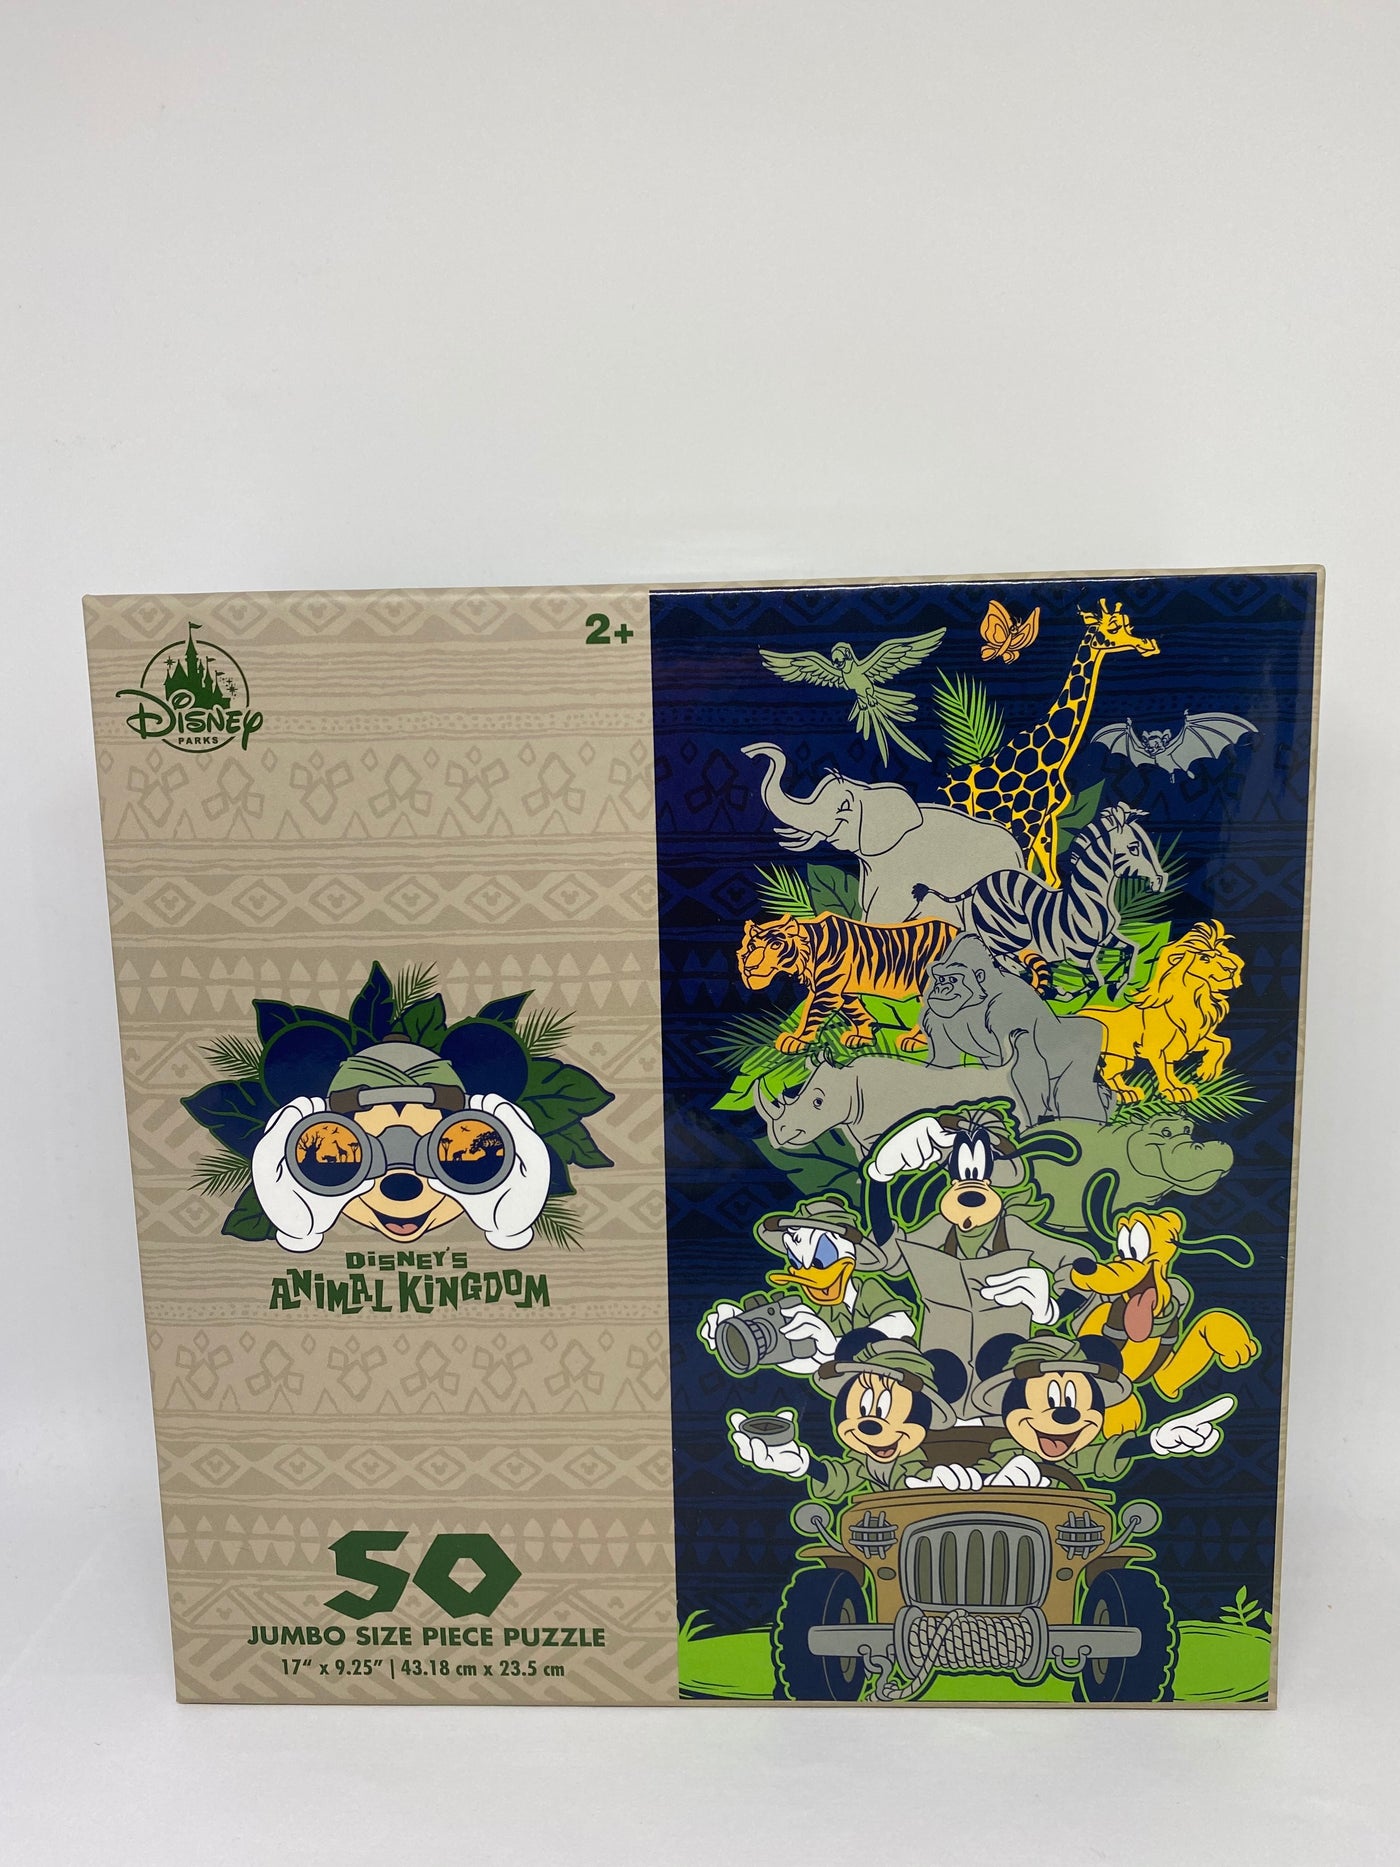 Disney Parks Animal Kingdom 50 Jumbo Size Piece Puzzle New with Box